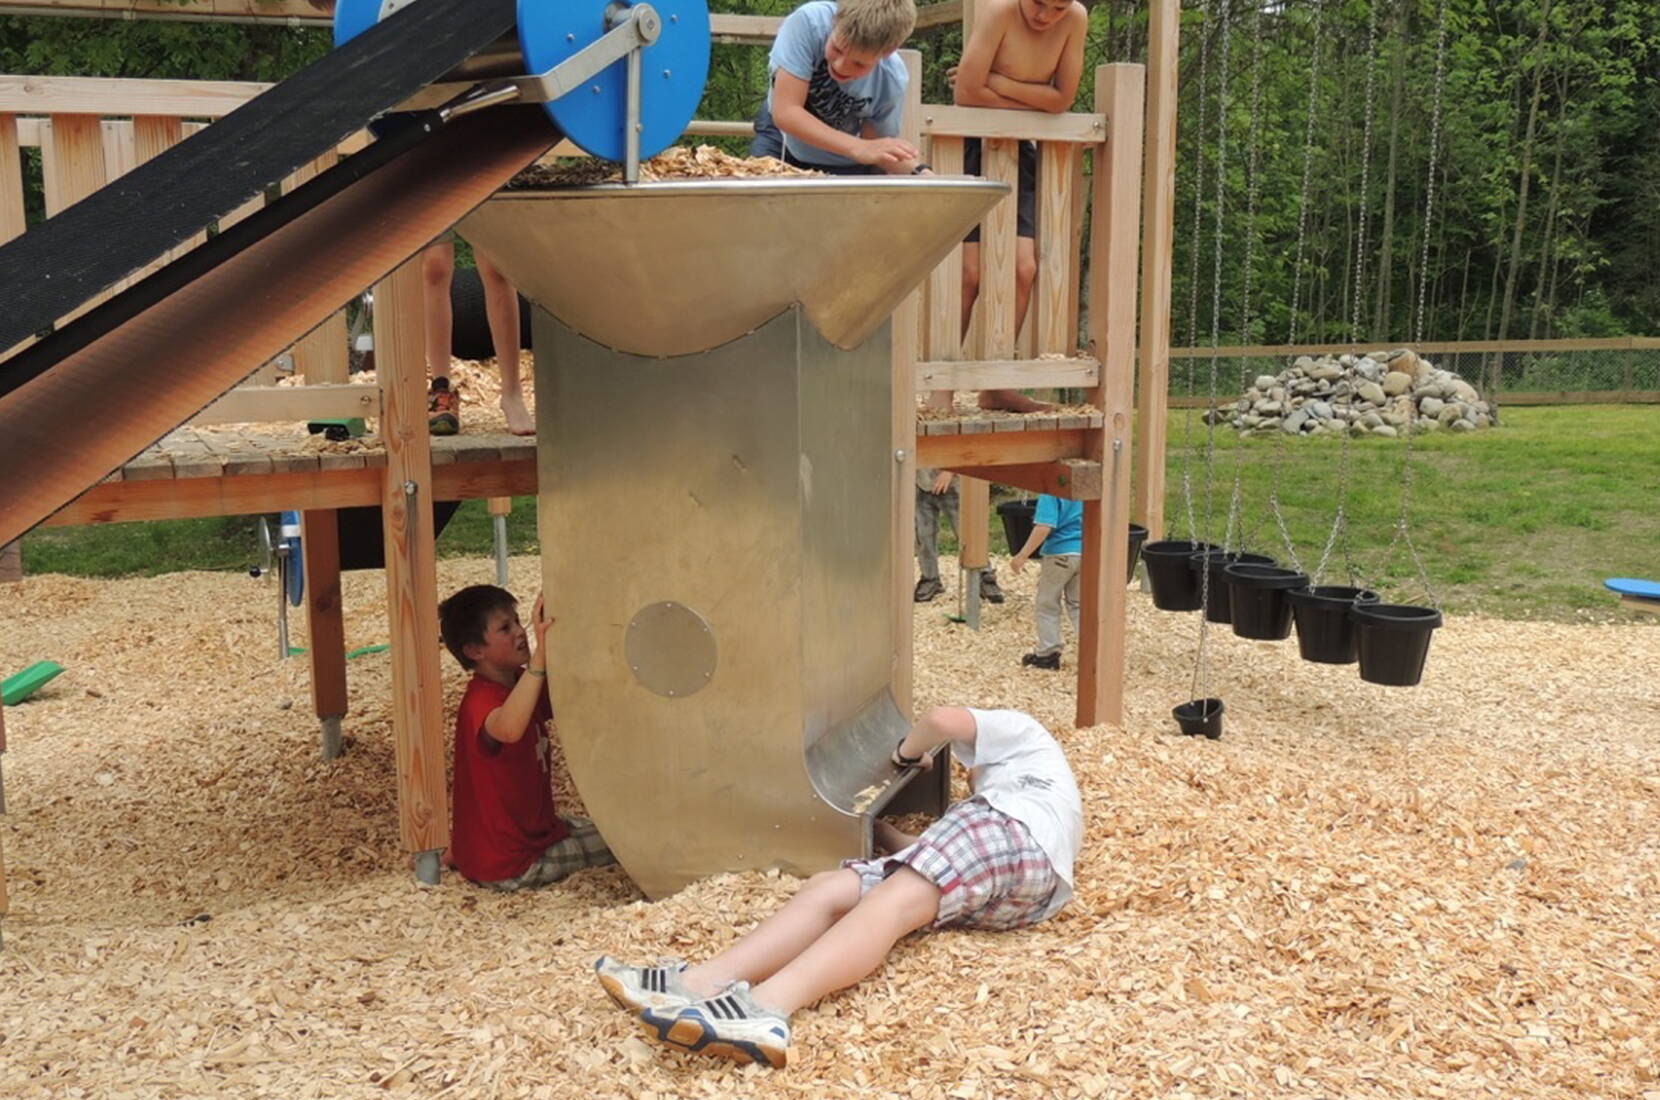 Gita in famiglia al parco giochi intorno all'energia nell'Entlebuch. Nel nuovo parco giochi dell'energia, i bambini possono esplorare in modo giocoso il tema delle energie rinnovabili. Allo stesso tempo, possono utilizzare le proprie riserve di energia e sfogarsi sulle numerose attrezzature del parco giochi.